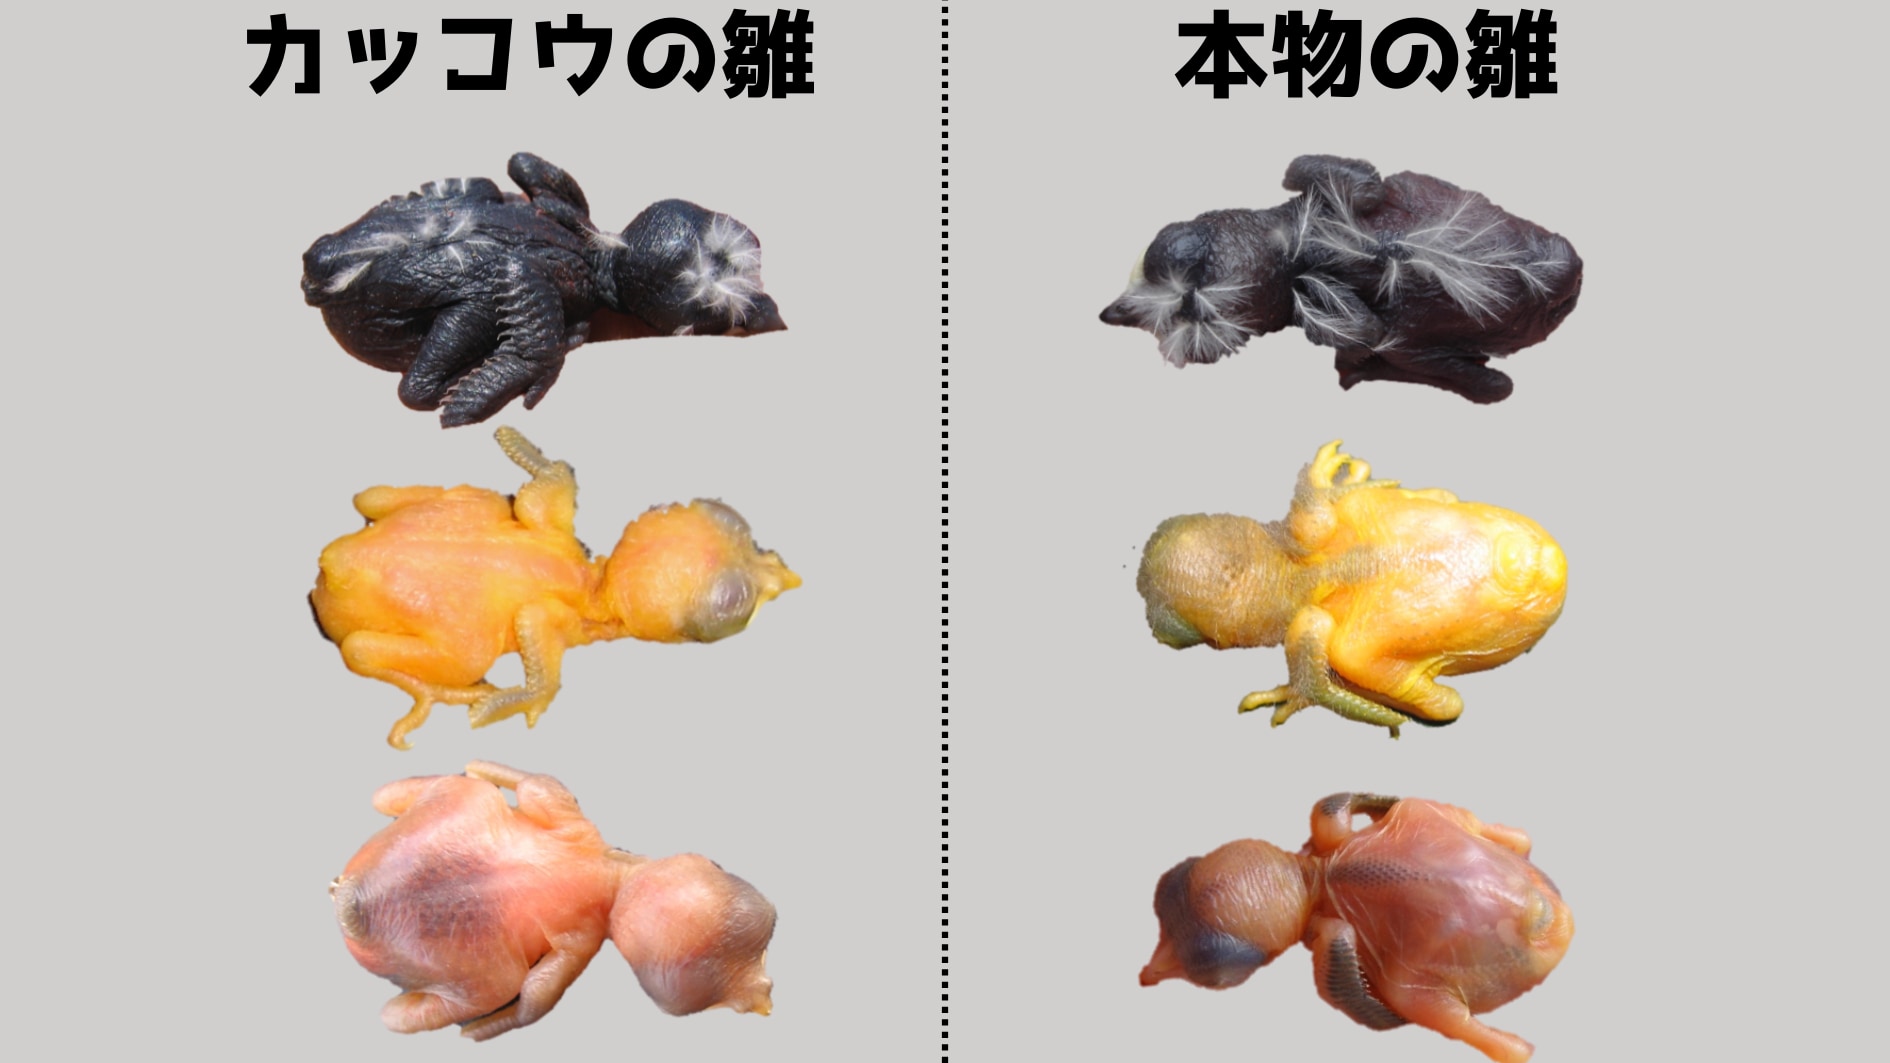 右側は托卵される側の雛のもともとの色。左側は分化したカッコウ種の雛で、托卵先にあわせて雛を似せるように進化していることがわかります